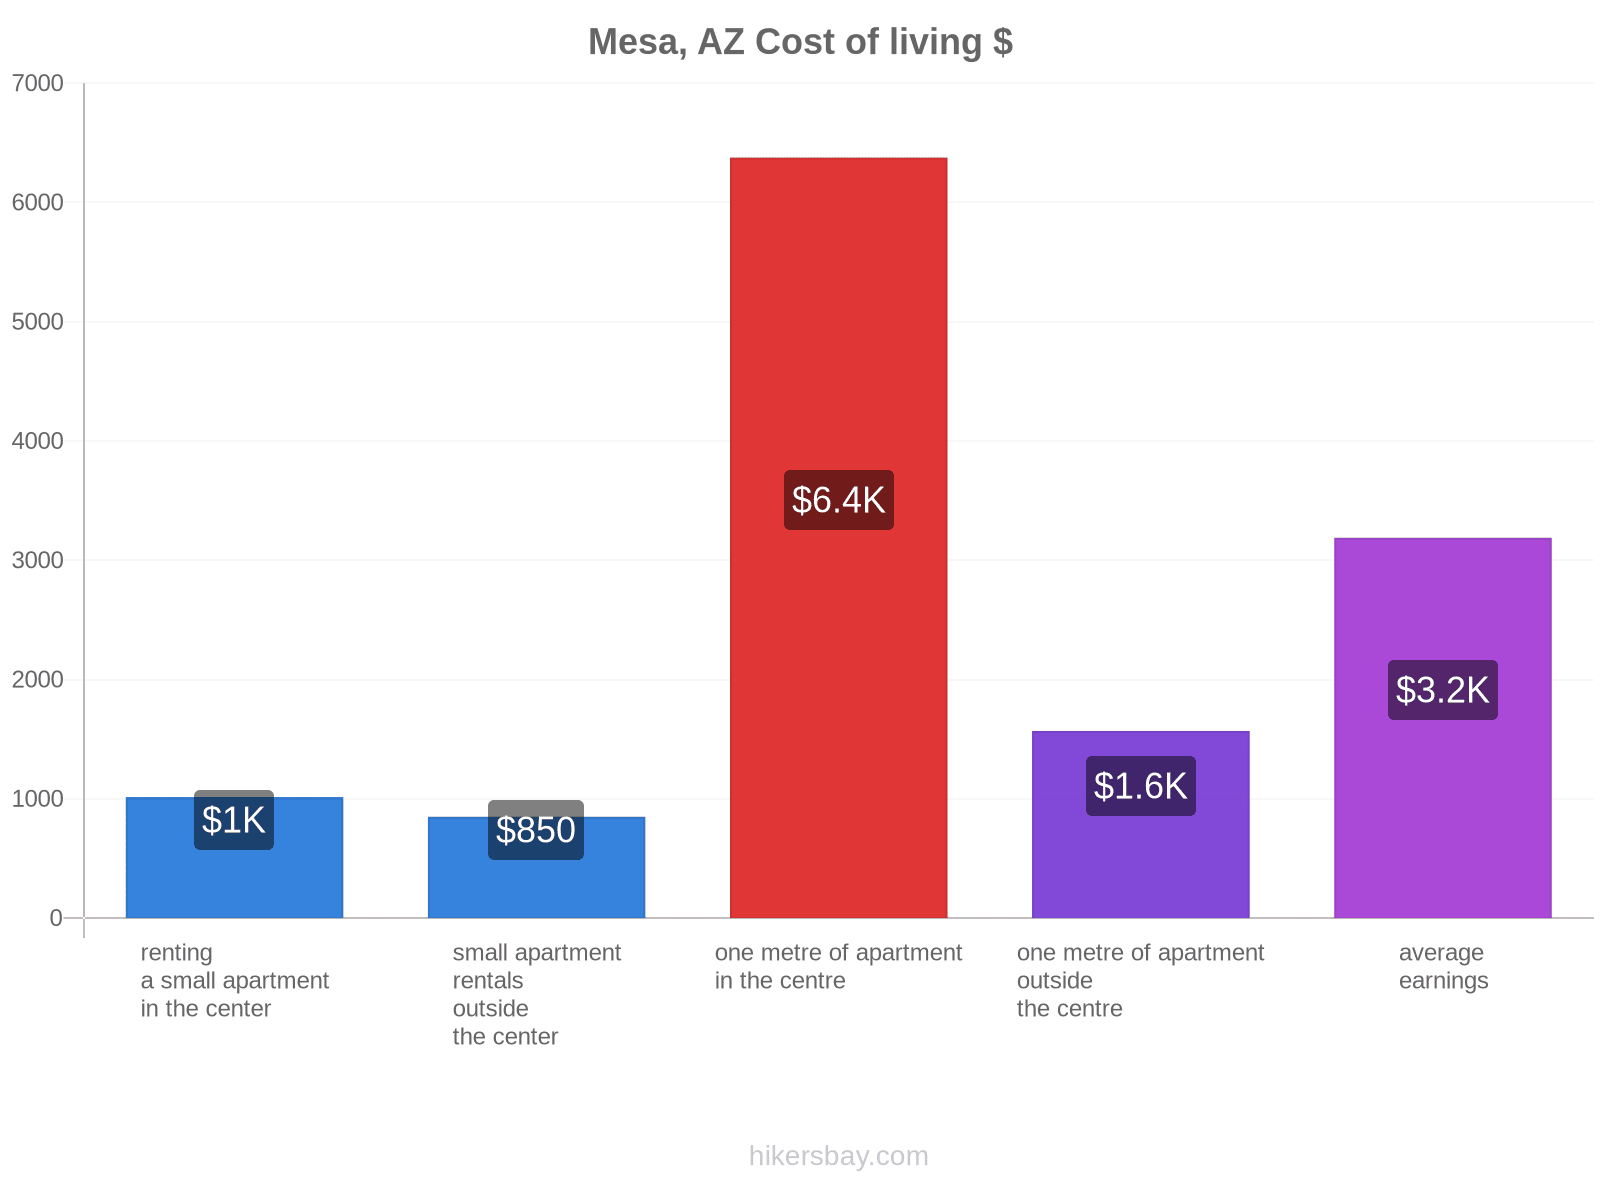 Mesa, AZ cost of living hikersbay.com